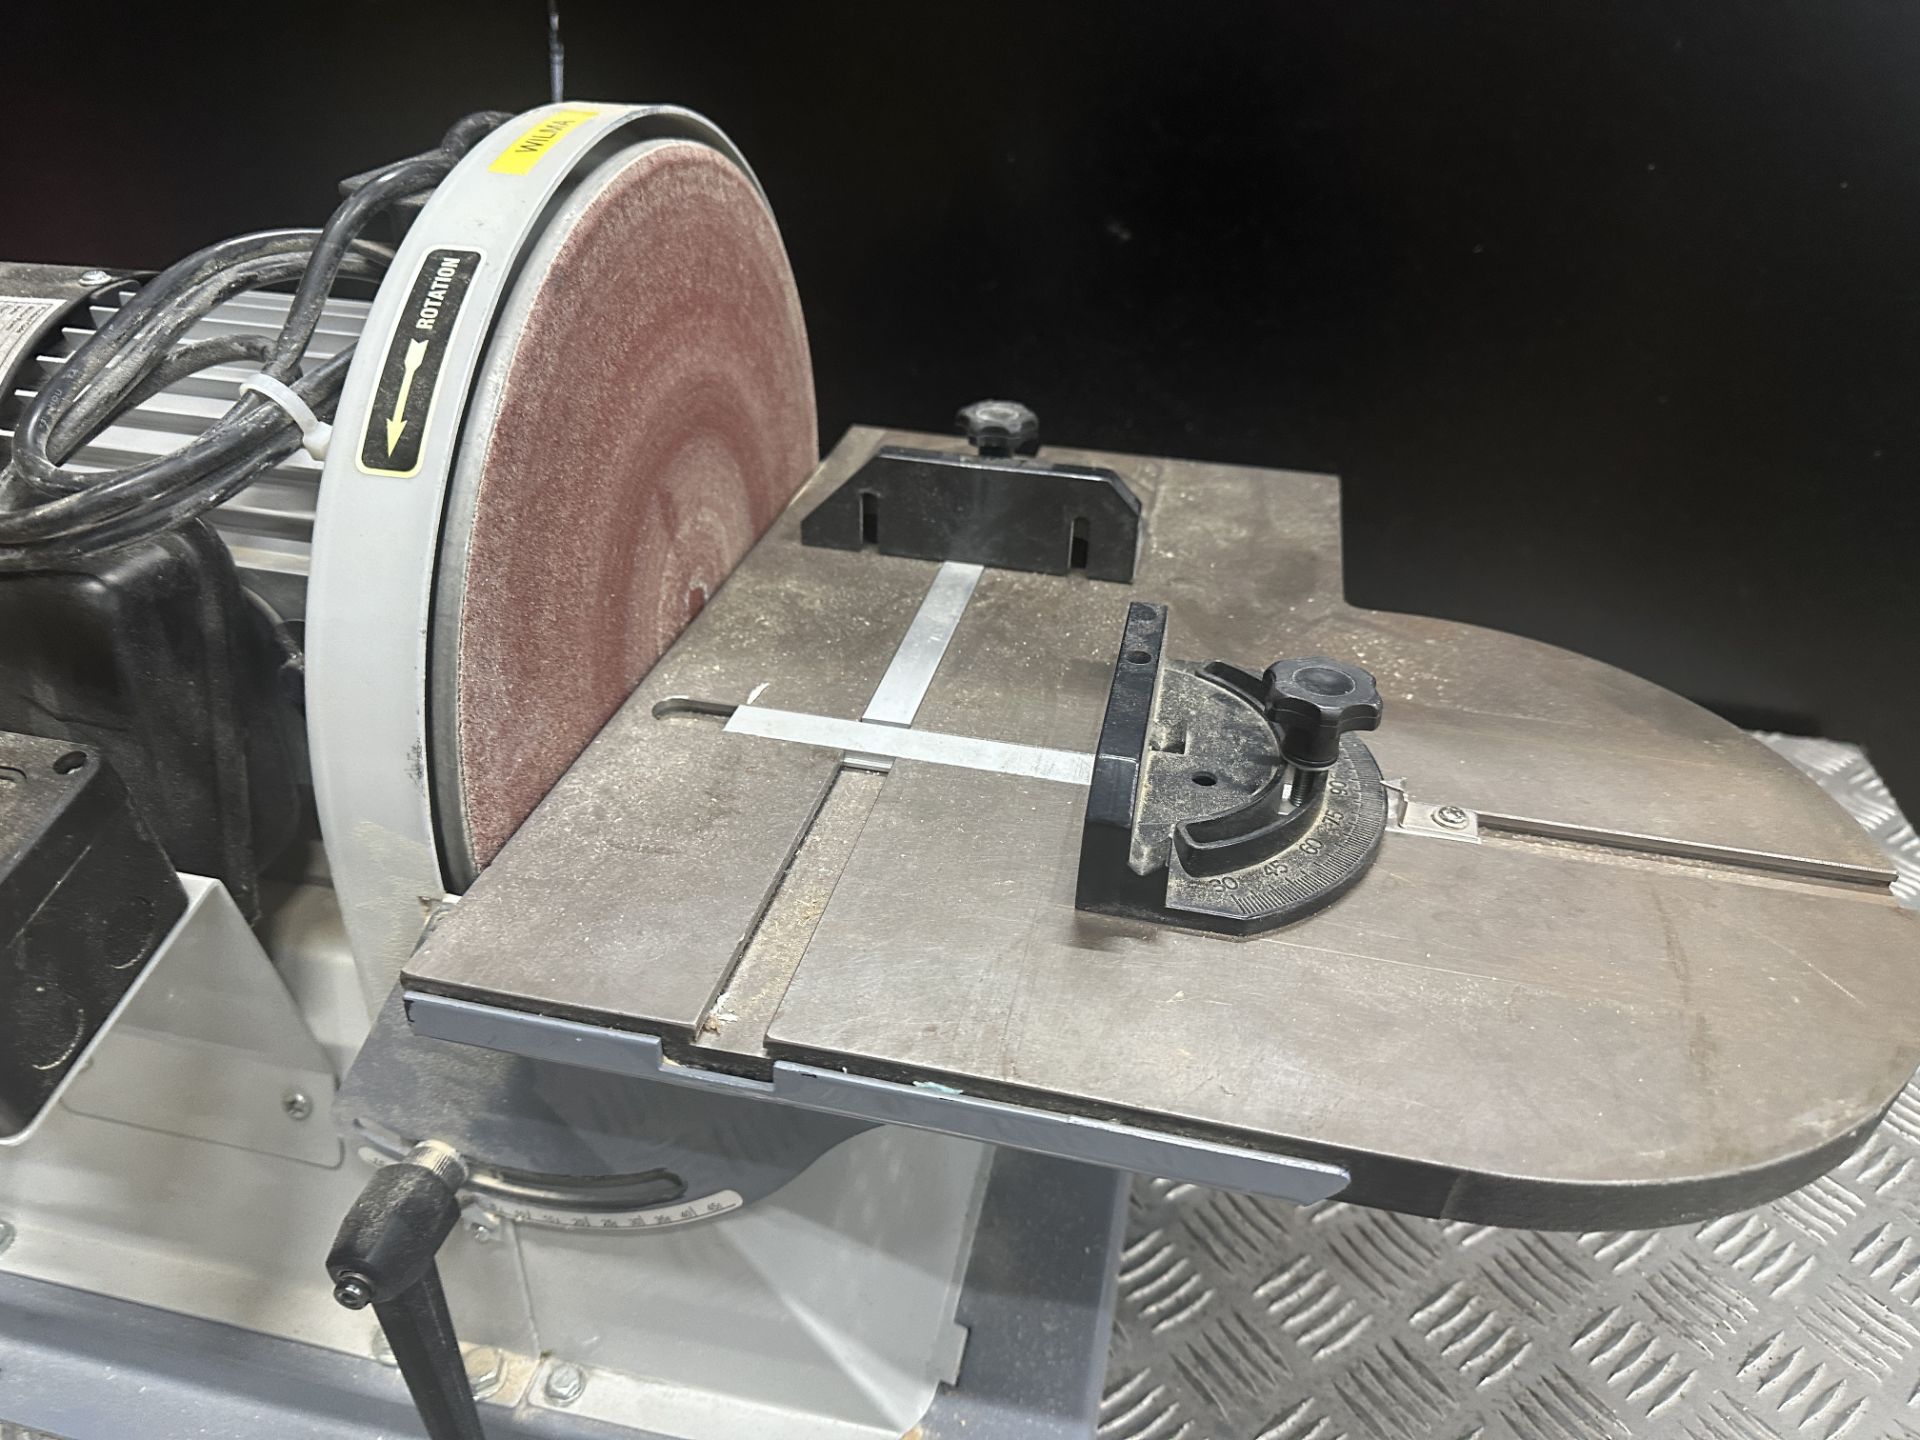 Axminster disc sander - Image 2 of 3